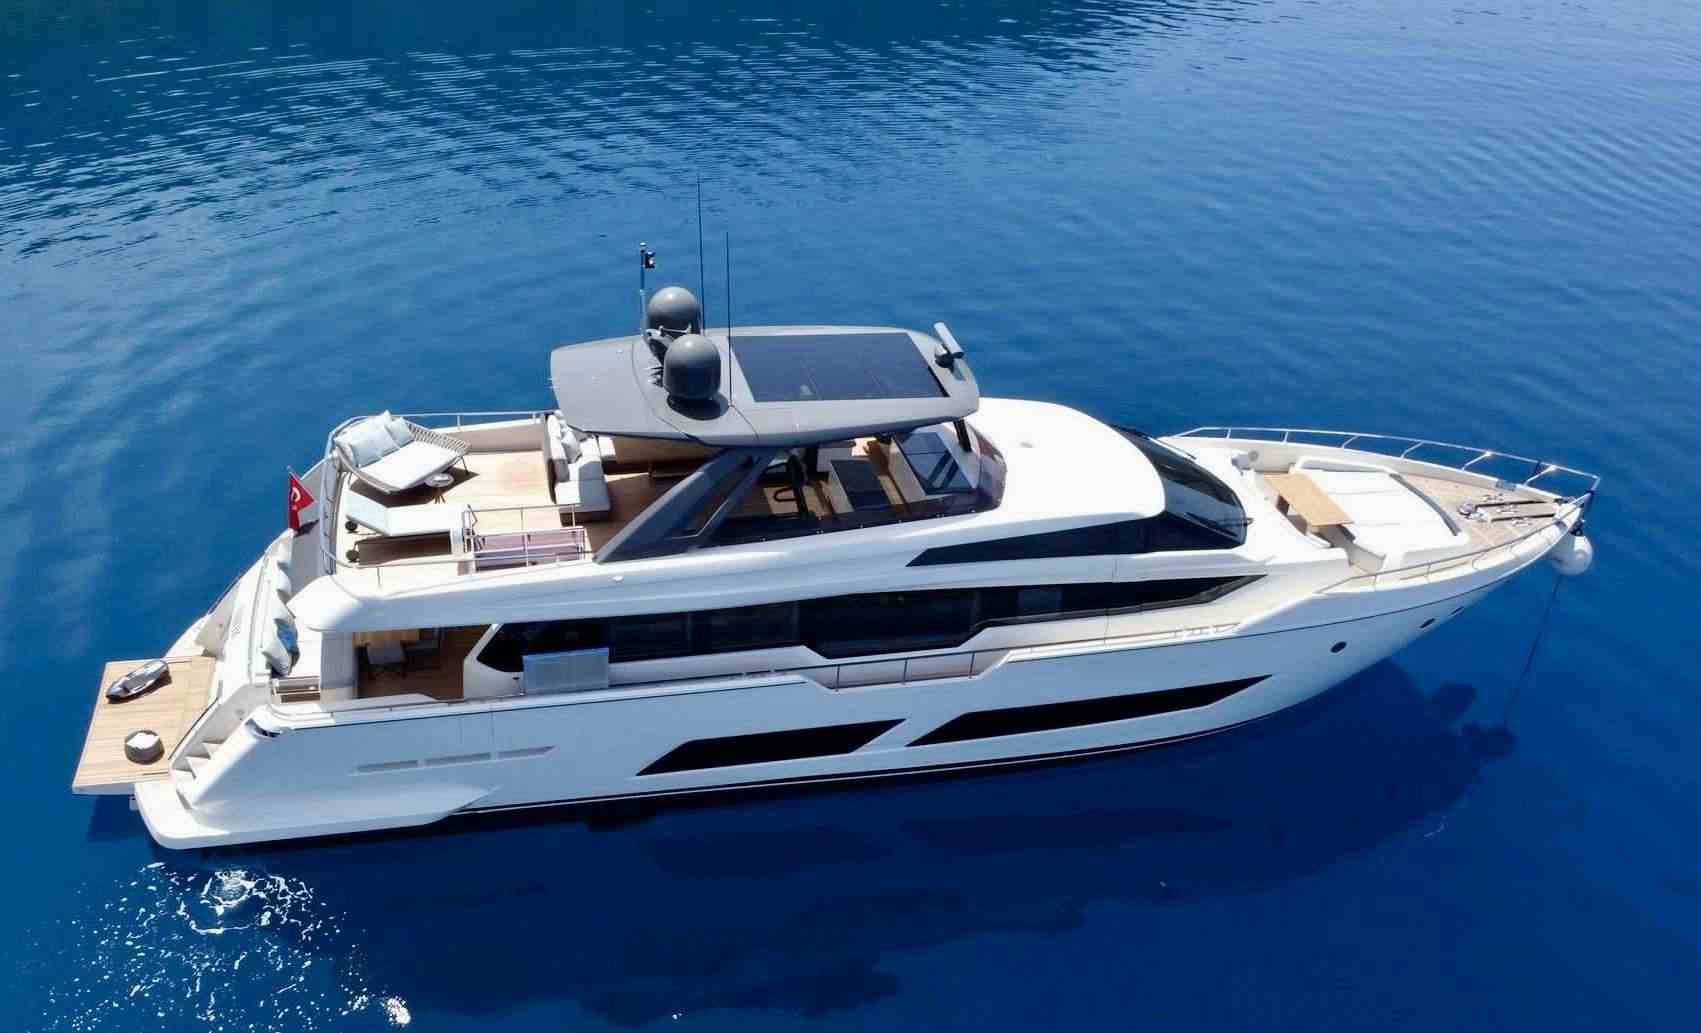 SHERO - Yacht Charter Mykonos & Boat hire in Greece & Turkey 1